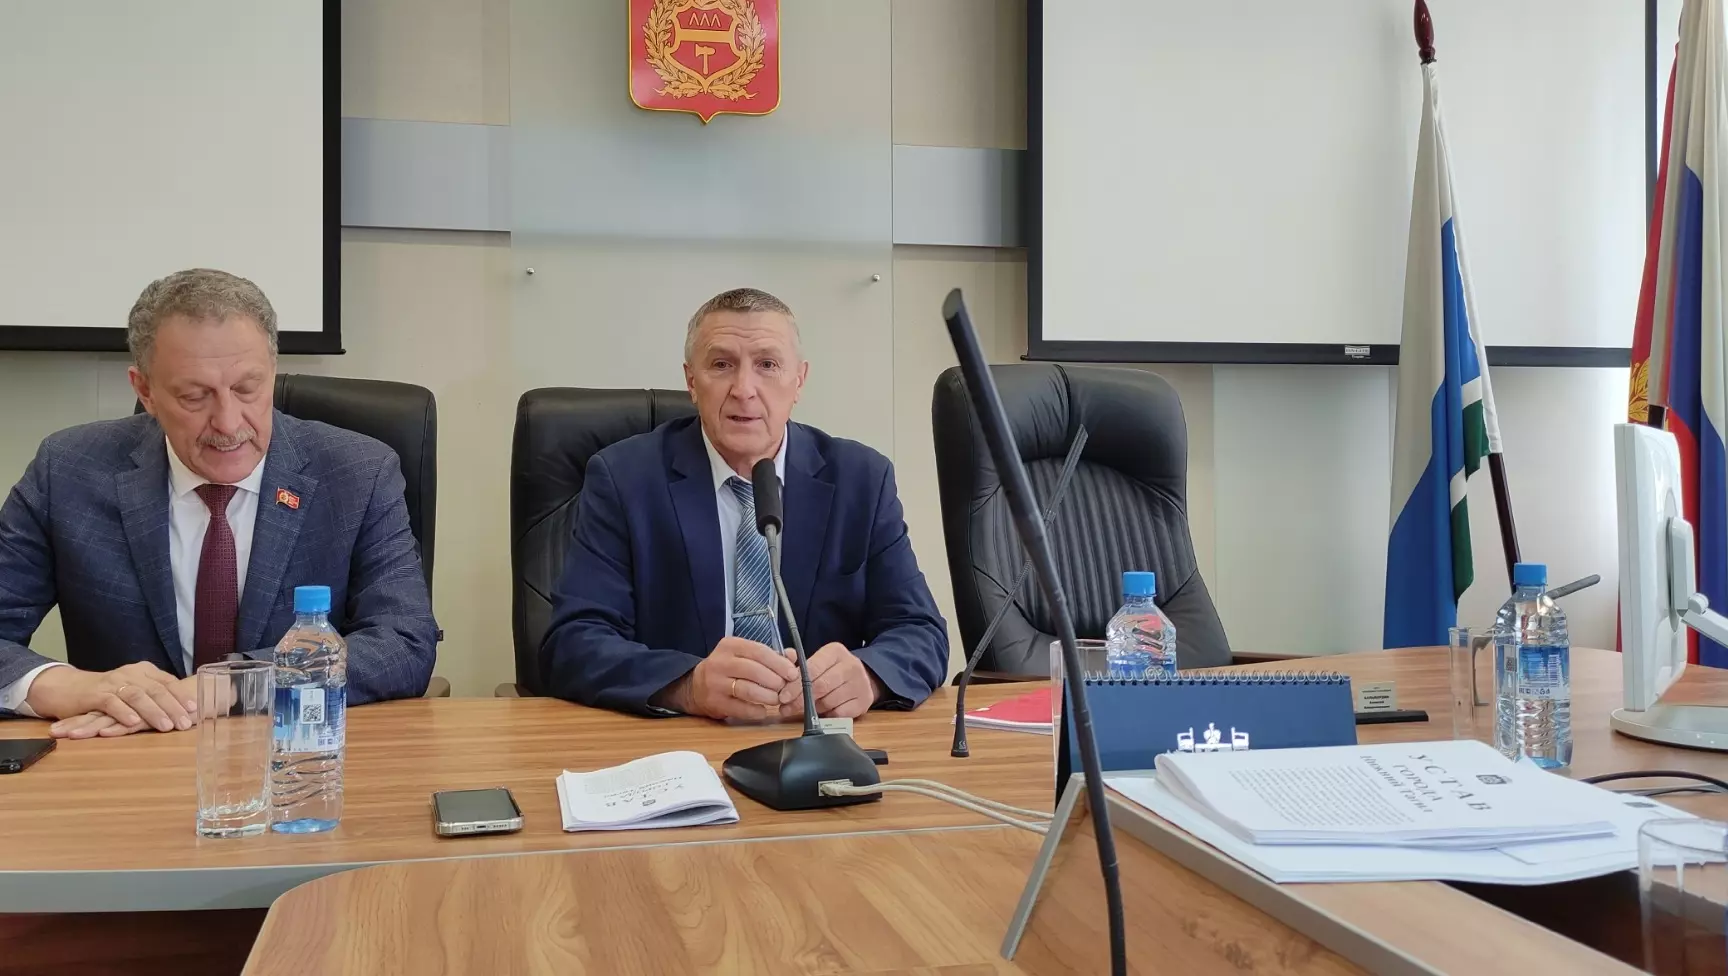 Комиссия изучила документы кандидатов на пост главы Нижнего Тагила